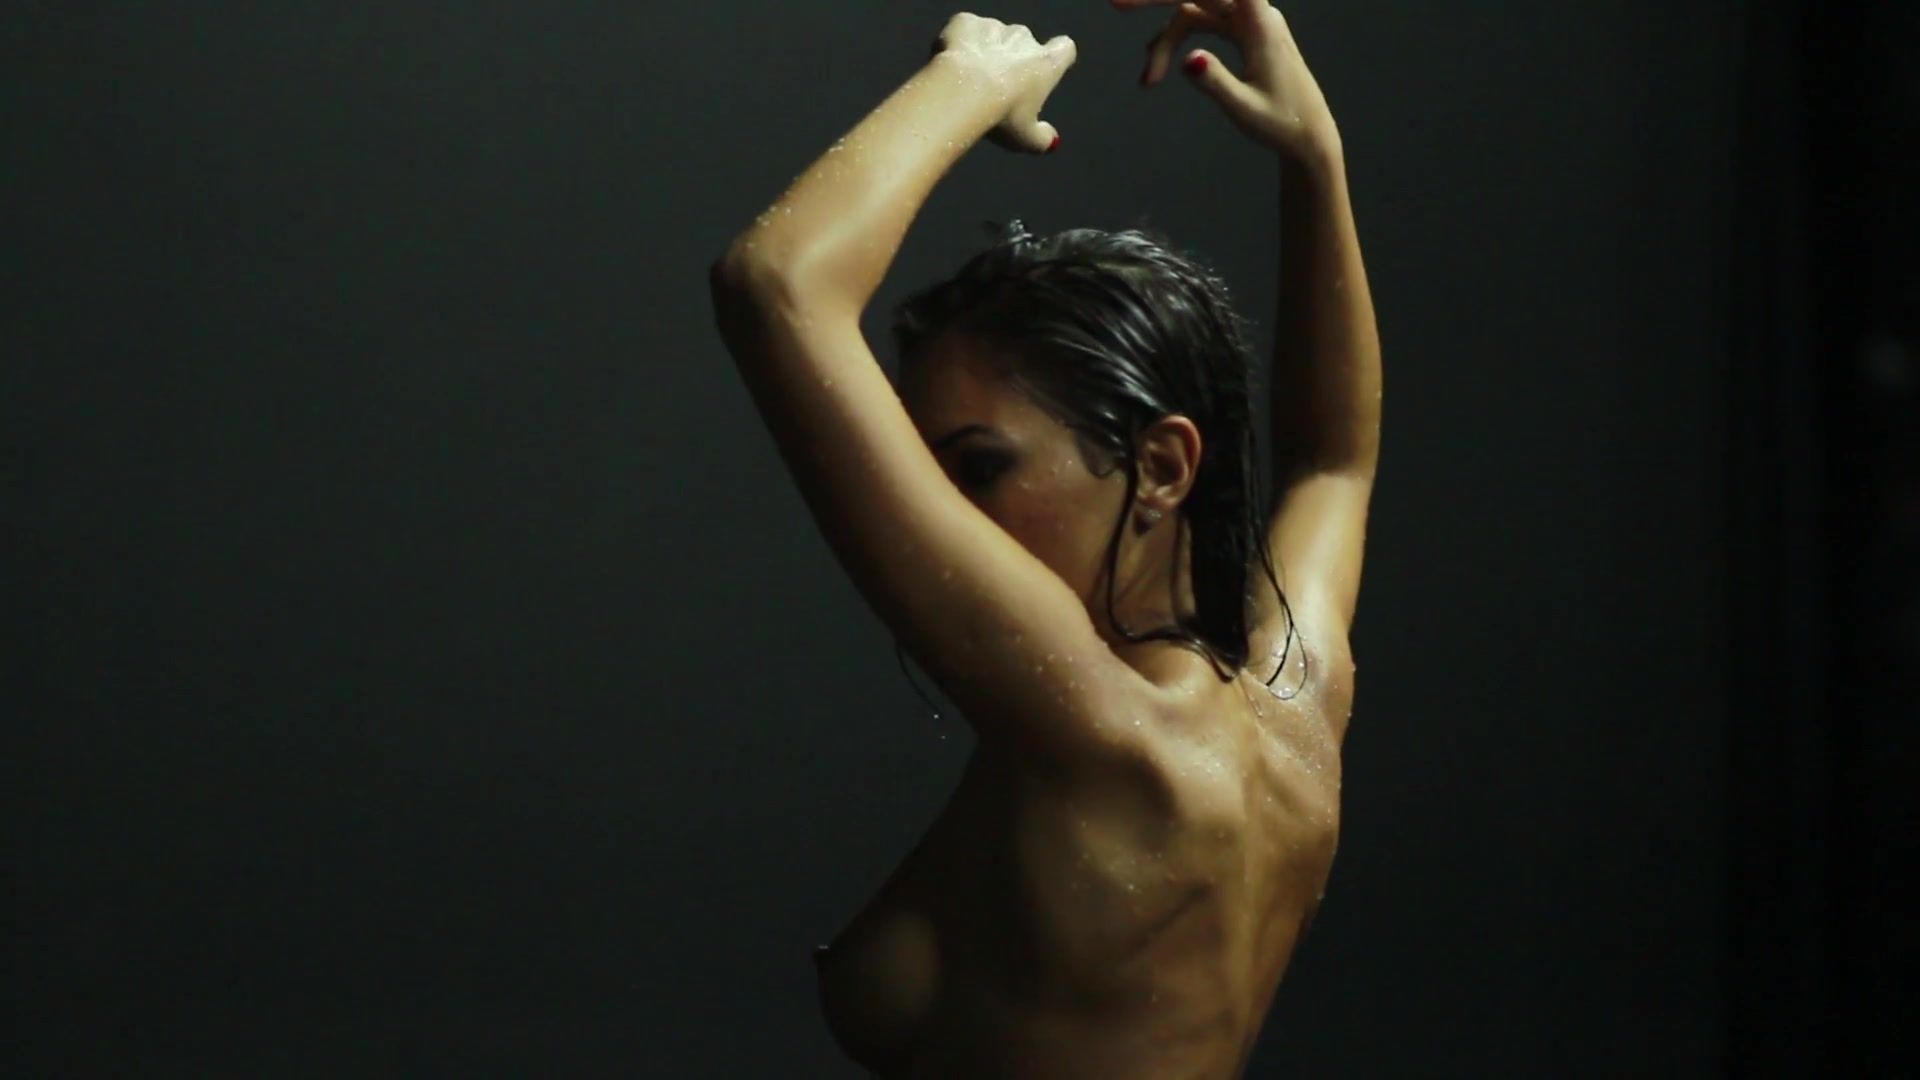 Full Nude Art Video - Sexual Aqua Milflix